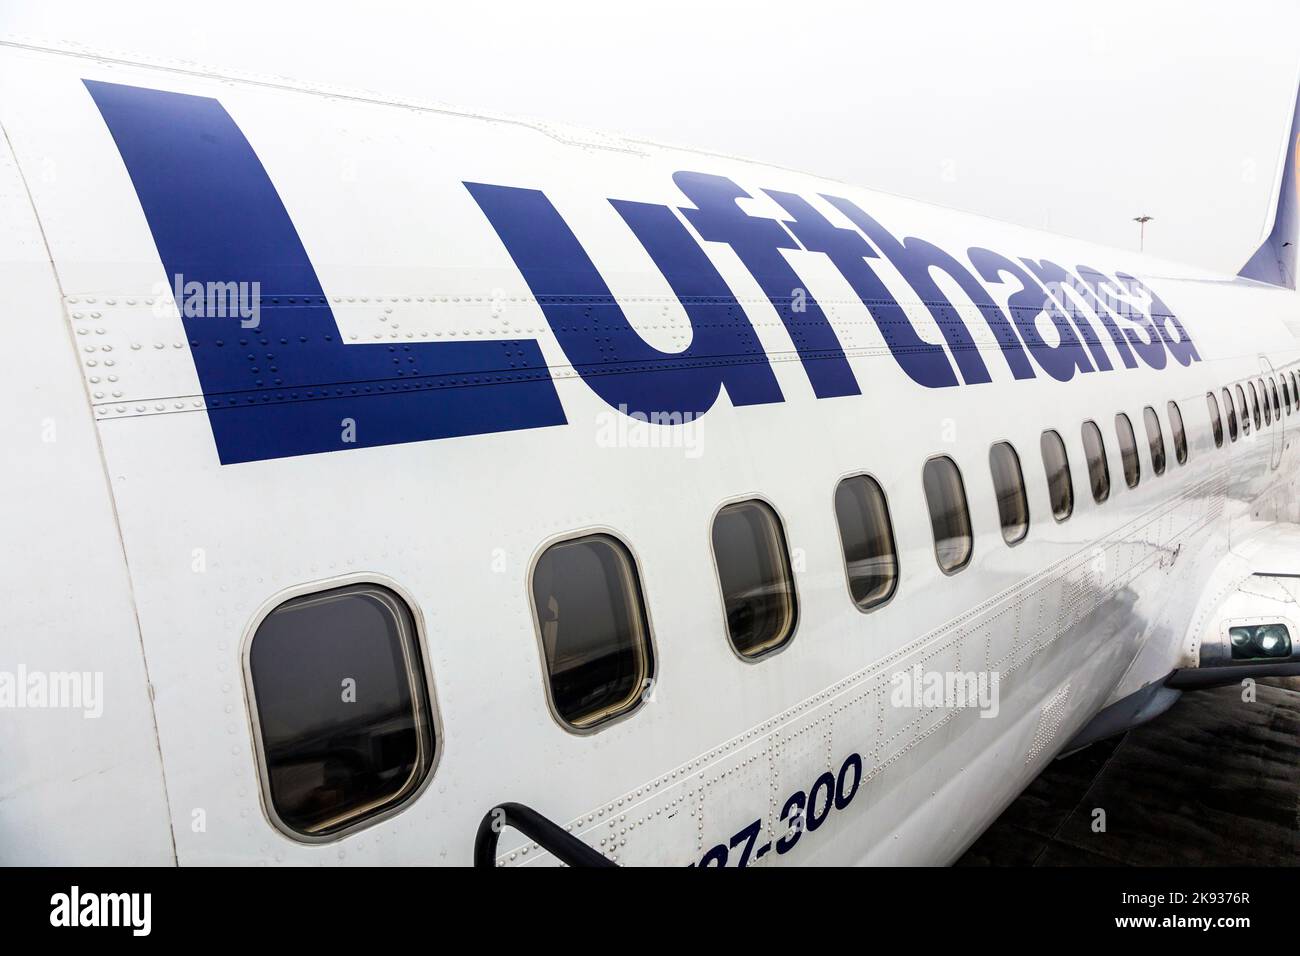 FRANCFORT, ALLEMAGNE - DEC 6, 2014: Lufthansa Boeing 737 prêt pour l'embarquement à Francfort, Allemagne. Francfort est l'aéroport le plus occupé en Allemagne et un o Banque D'Images